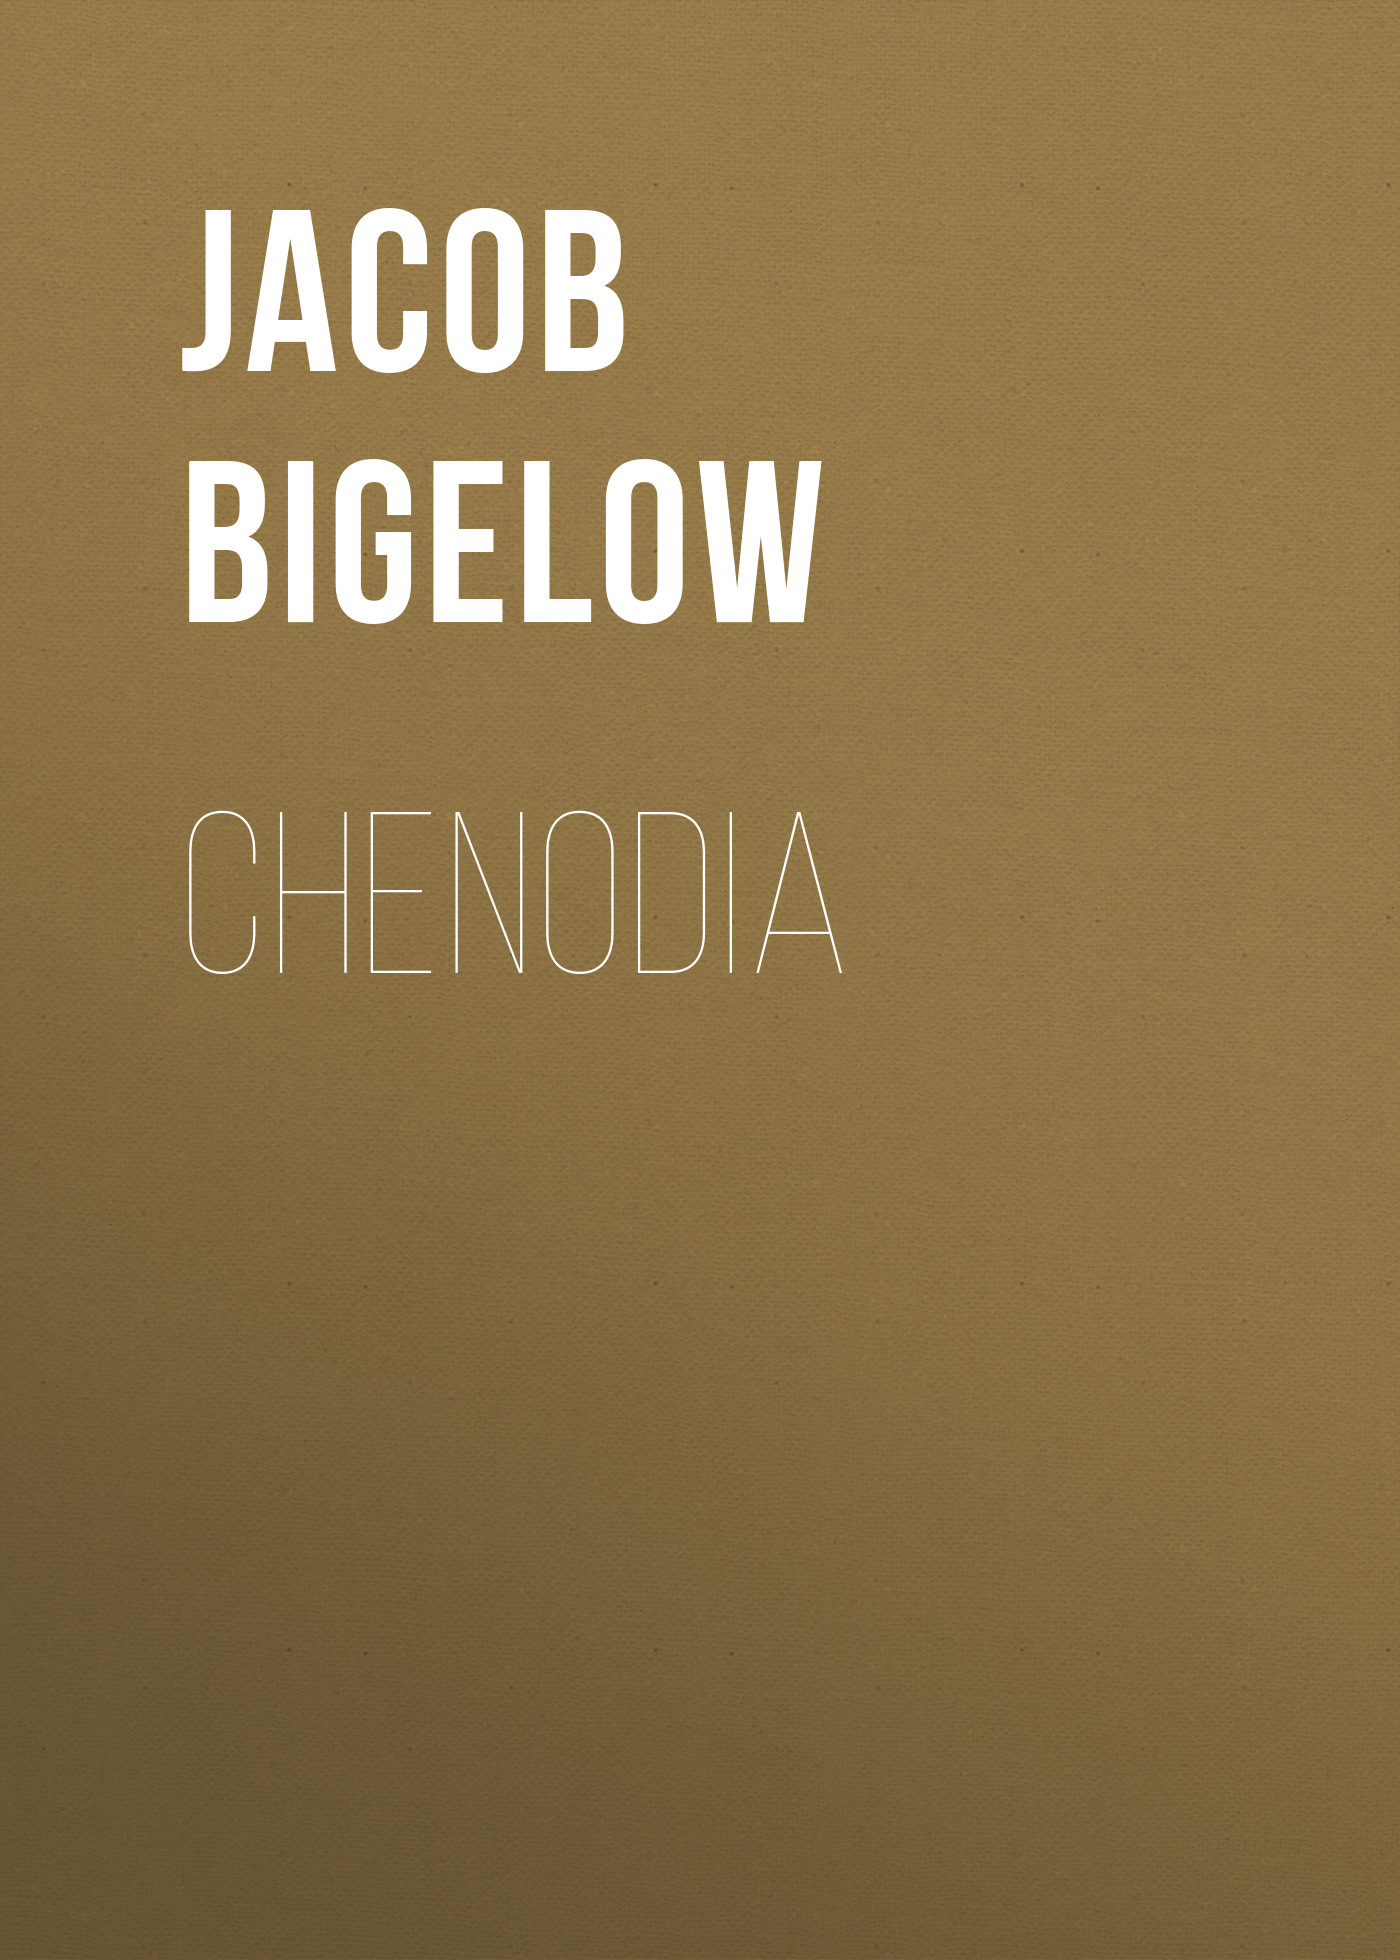 Книга Chenodia из серии , созданная Jacob Bigelow, может относится к жанру Зарубежная старинная литература, Зарубежная классика. Стоимость электронной книги Chenodia с идентификатором 24178452 составляет 0.90 руб.